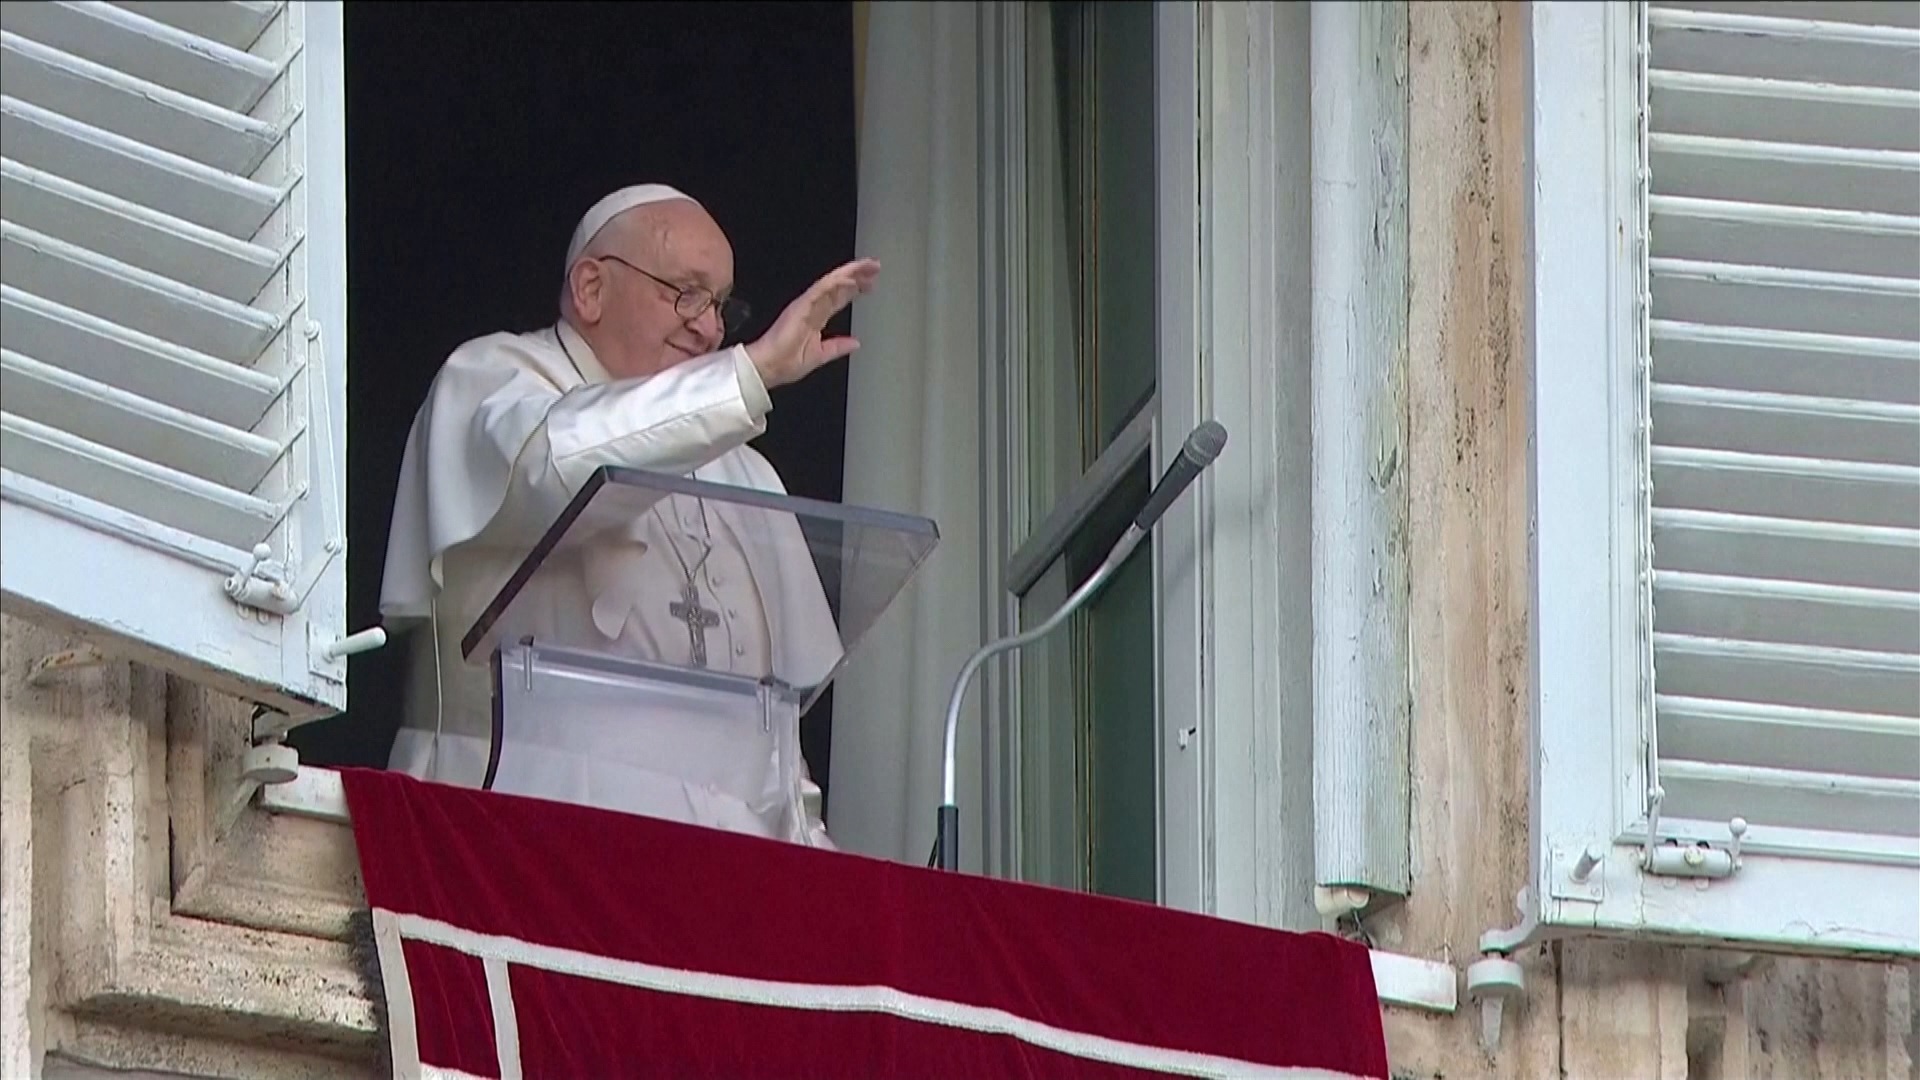 Ferenc pápa saját temetési szertartásáról beszélt a legújabb interjújában